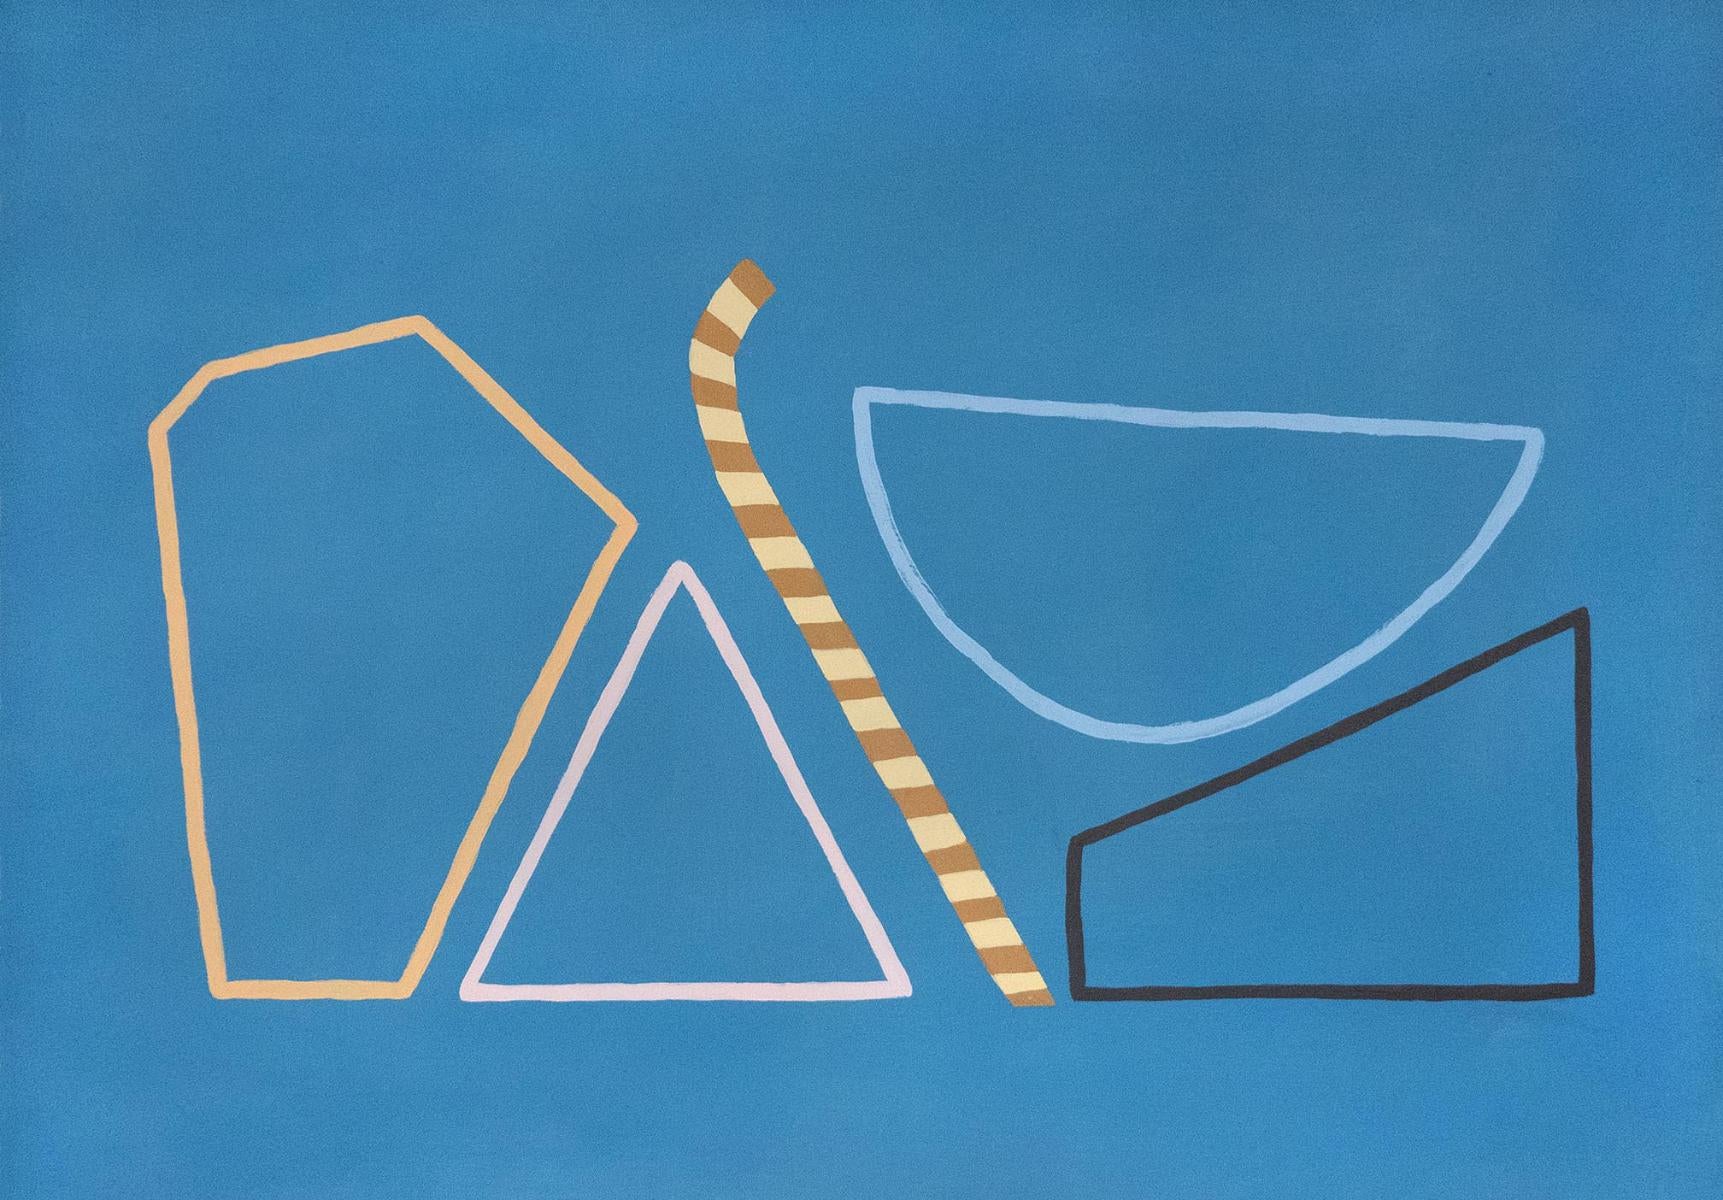 Abstract Painting Amanda Andersen - "Blue Candy" Peinture abstraite sur papier, dessin au trait minimal, nature morte géométrique